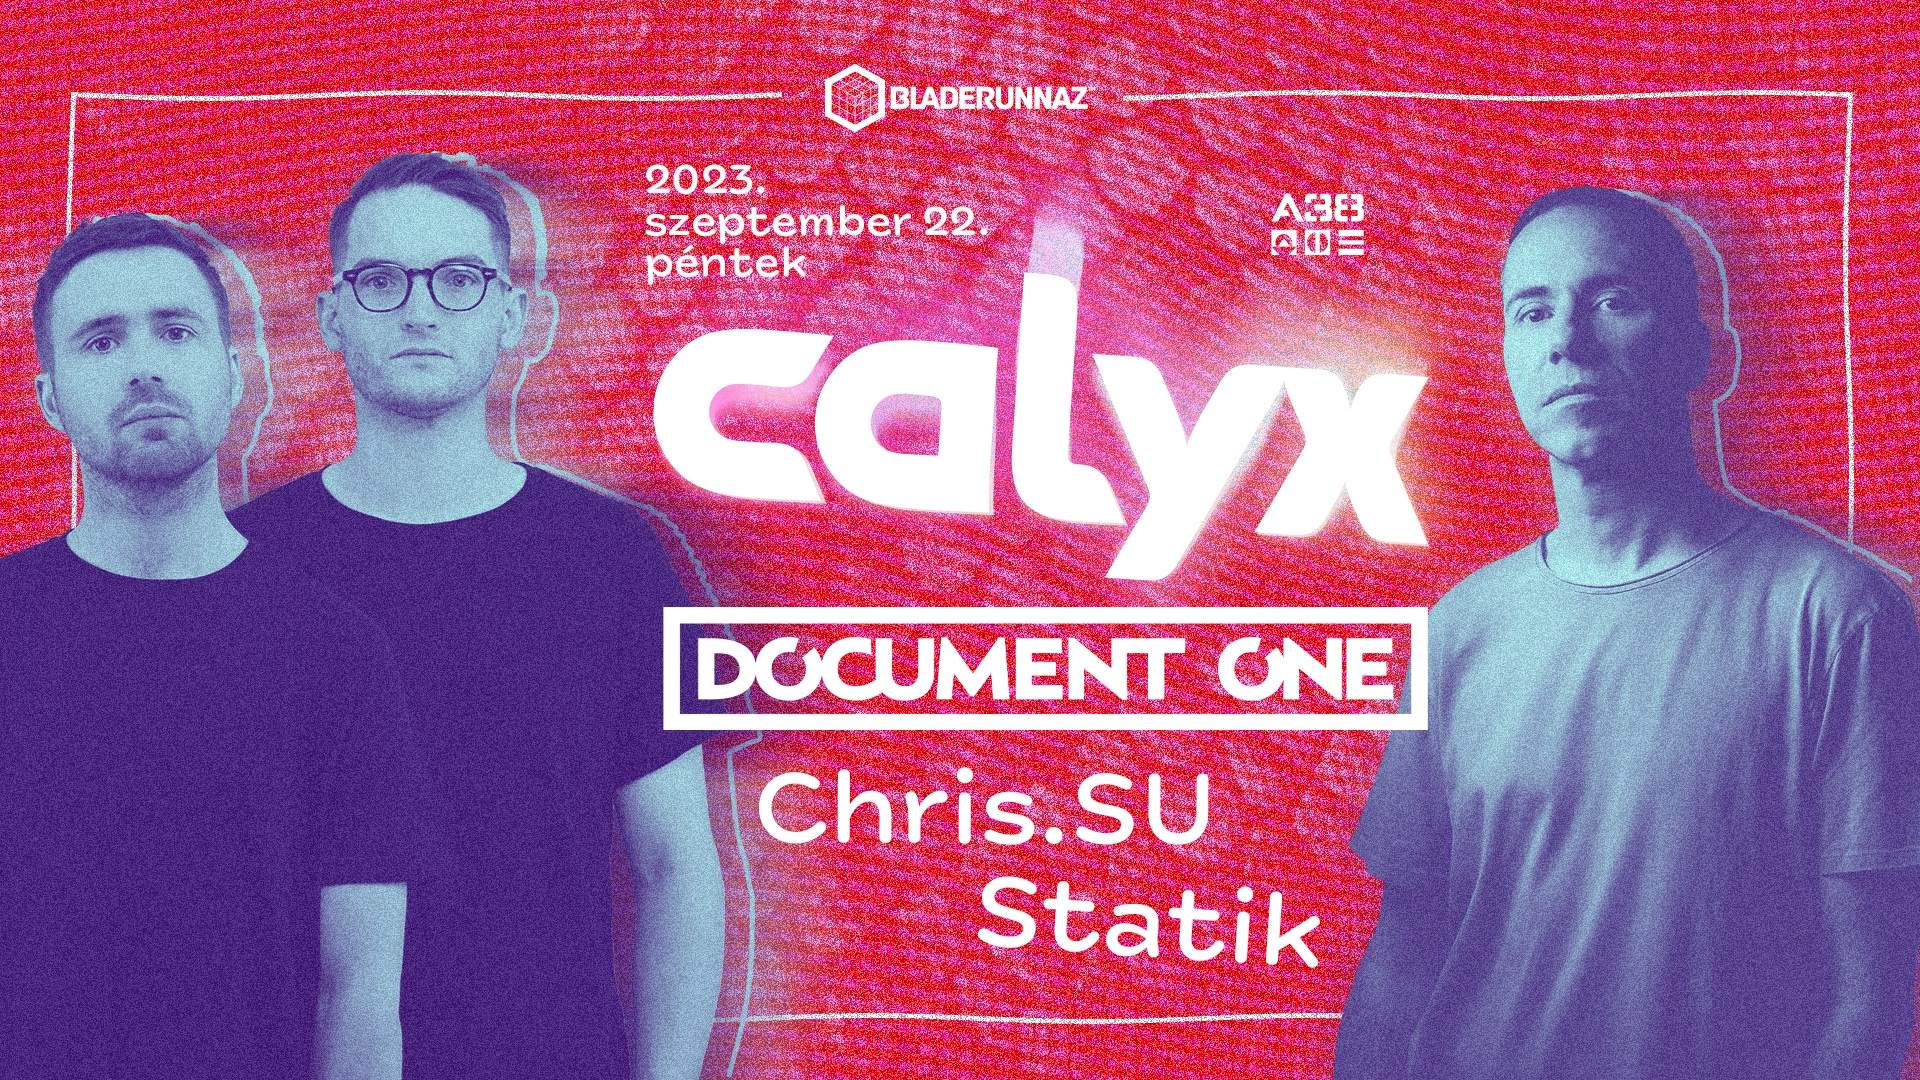 Bladerunnaz presents: Calyx & Document One - フライヤー表